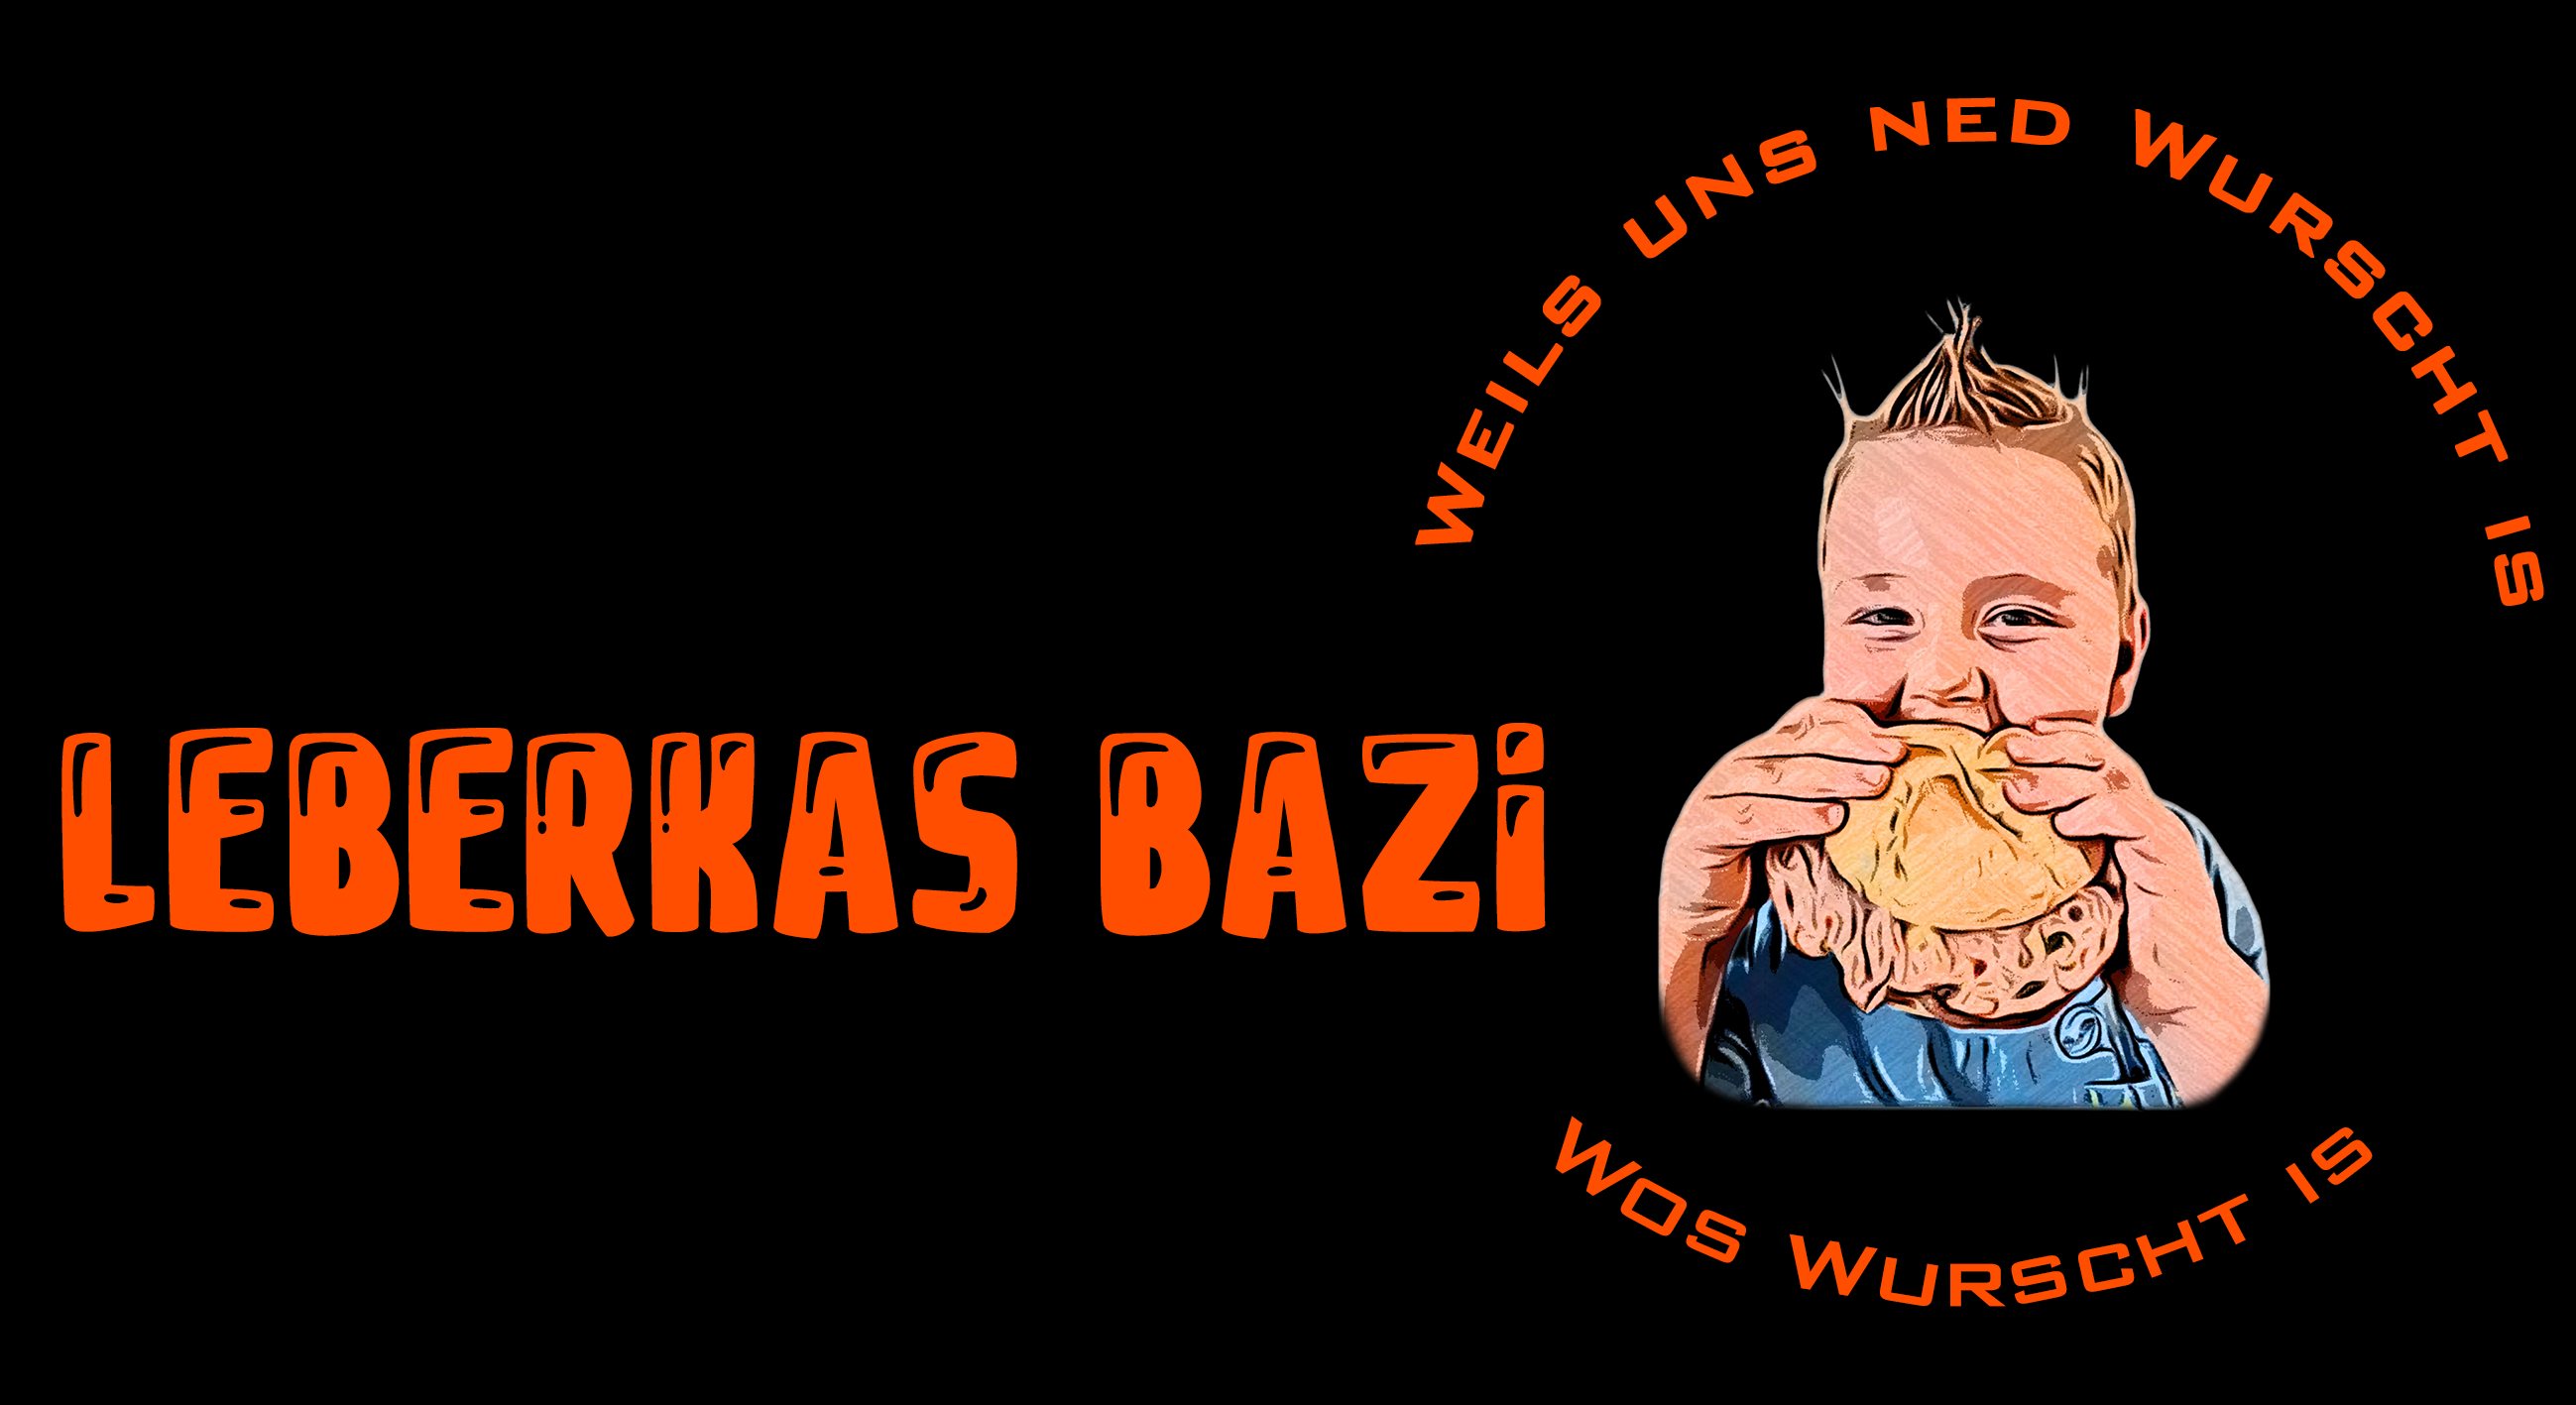 Logo Leberkasbazi